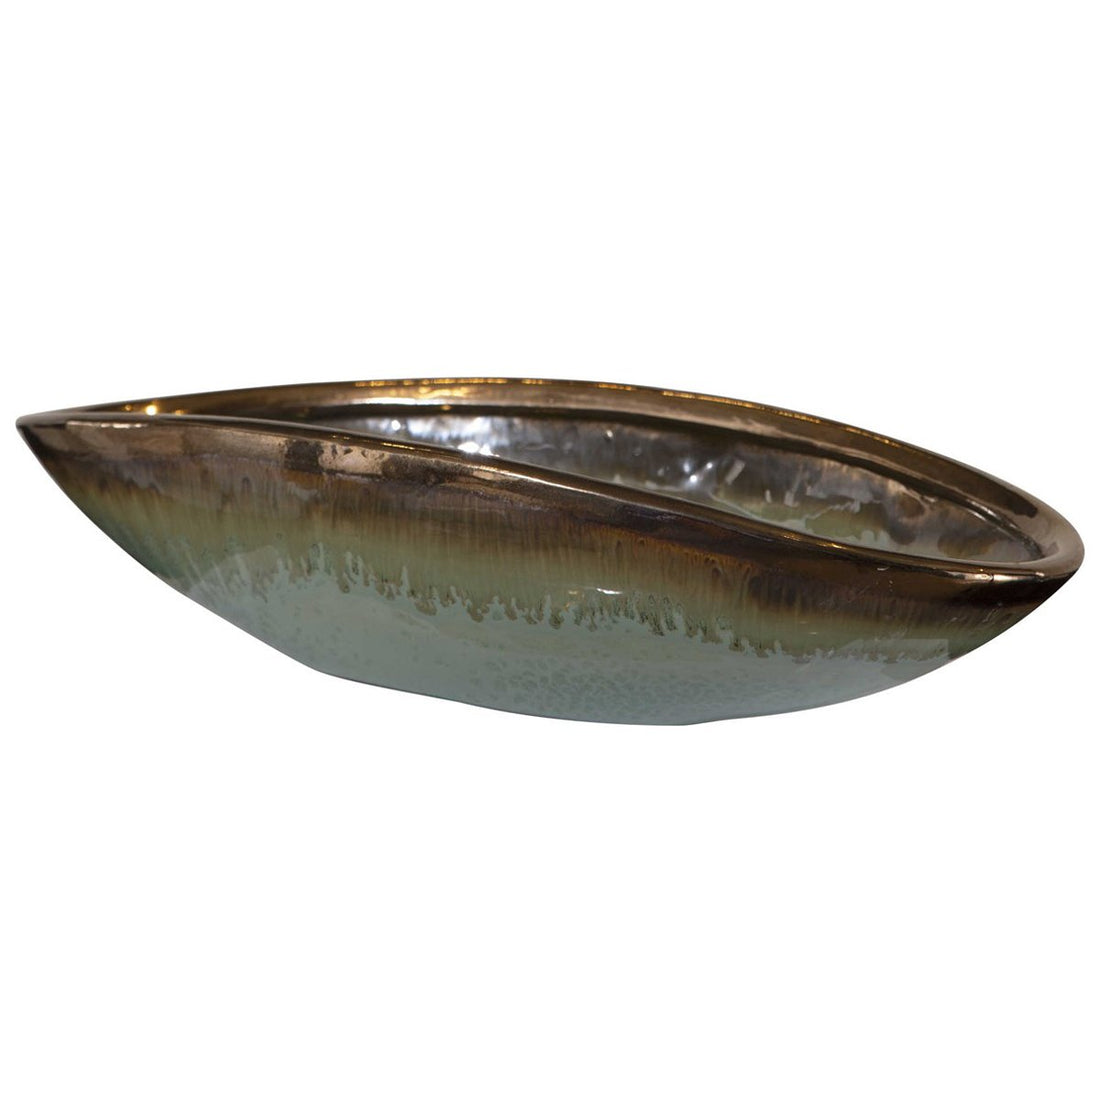 Uttermost Iroquois Green Glaze Bowl